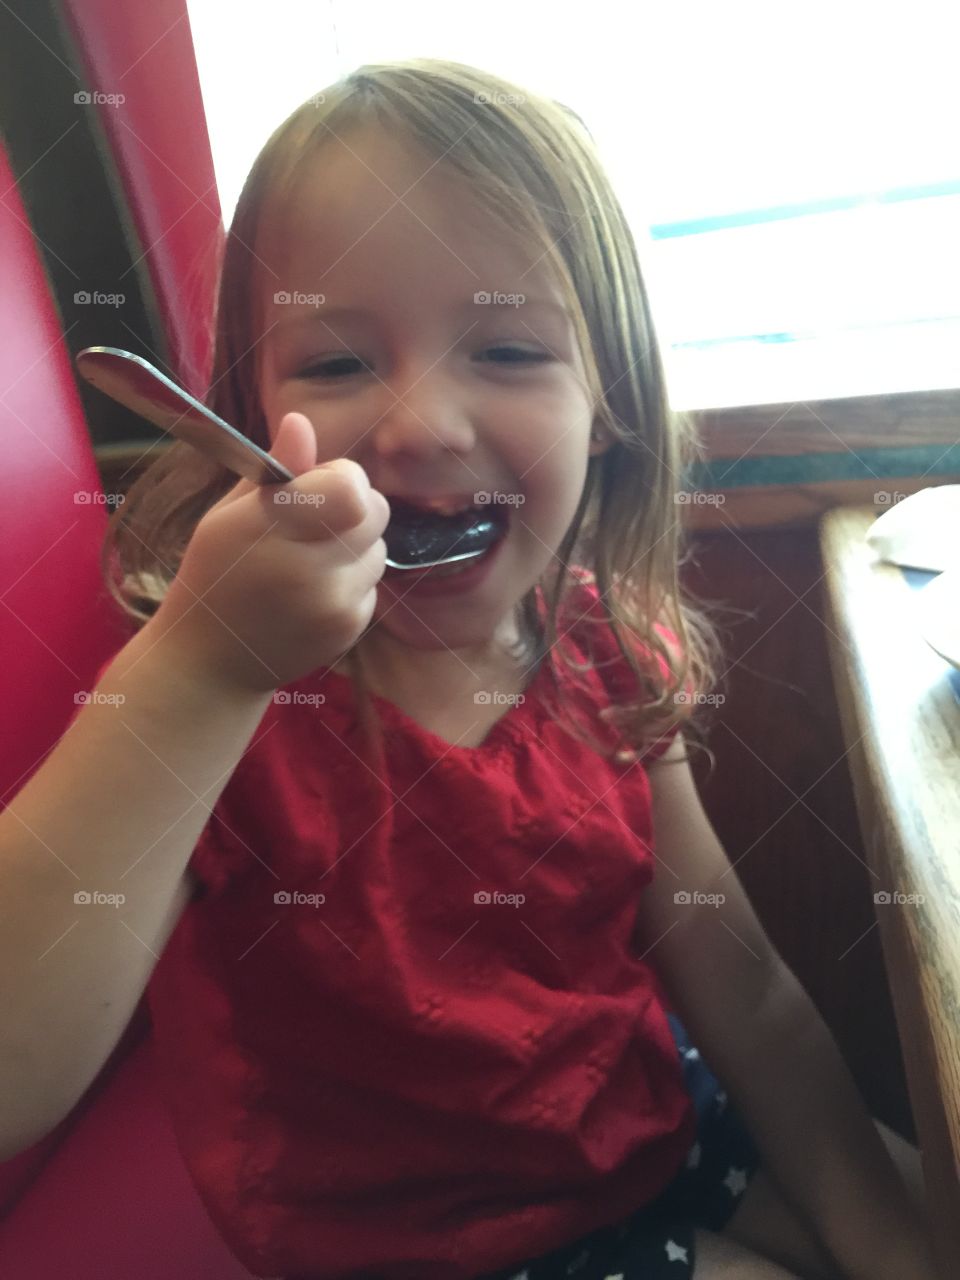 Small girl eating